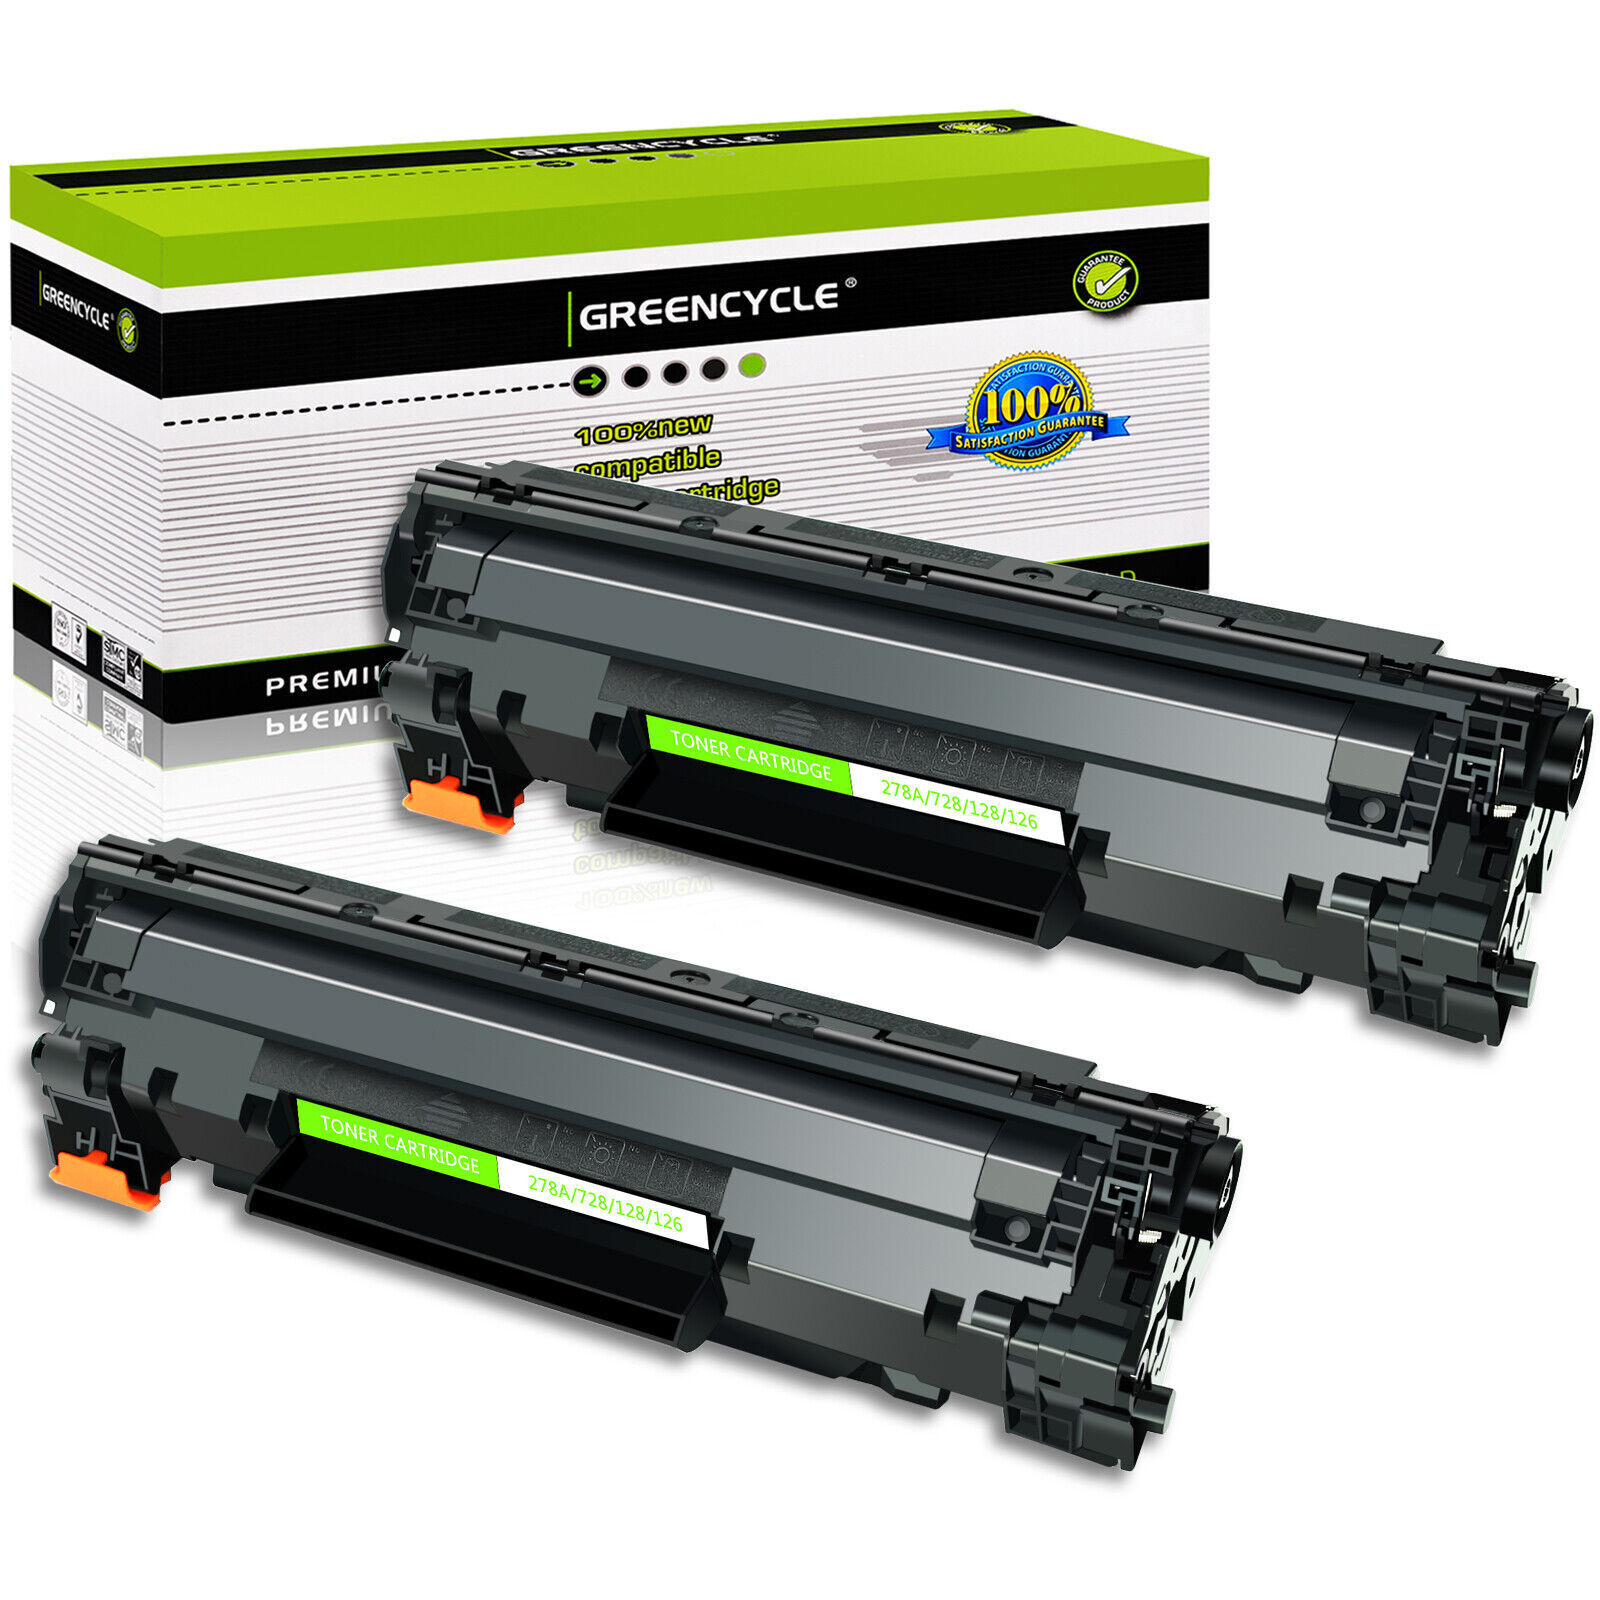 Greencycle 2PK Toner Cartridge For Canon ImageCLASS MF4412/MF4420/MF4430/MF4450